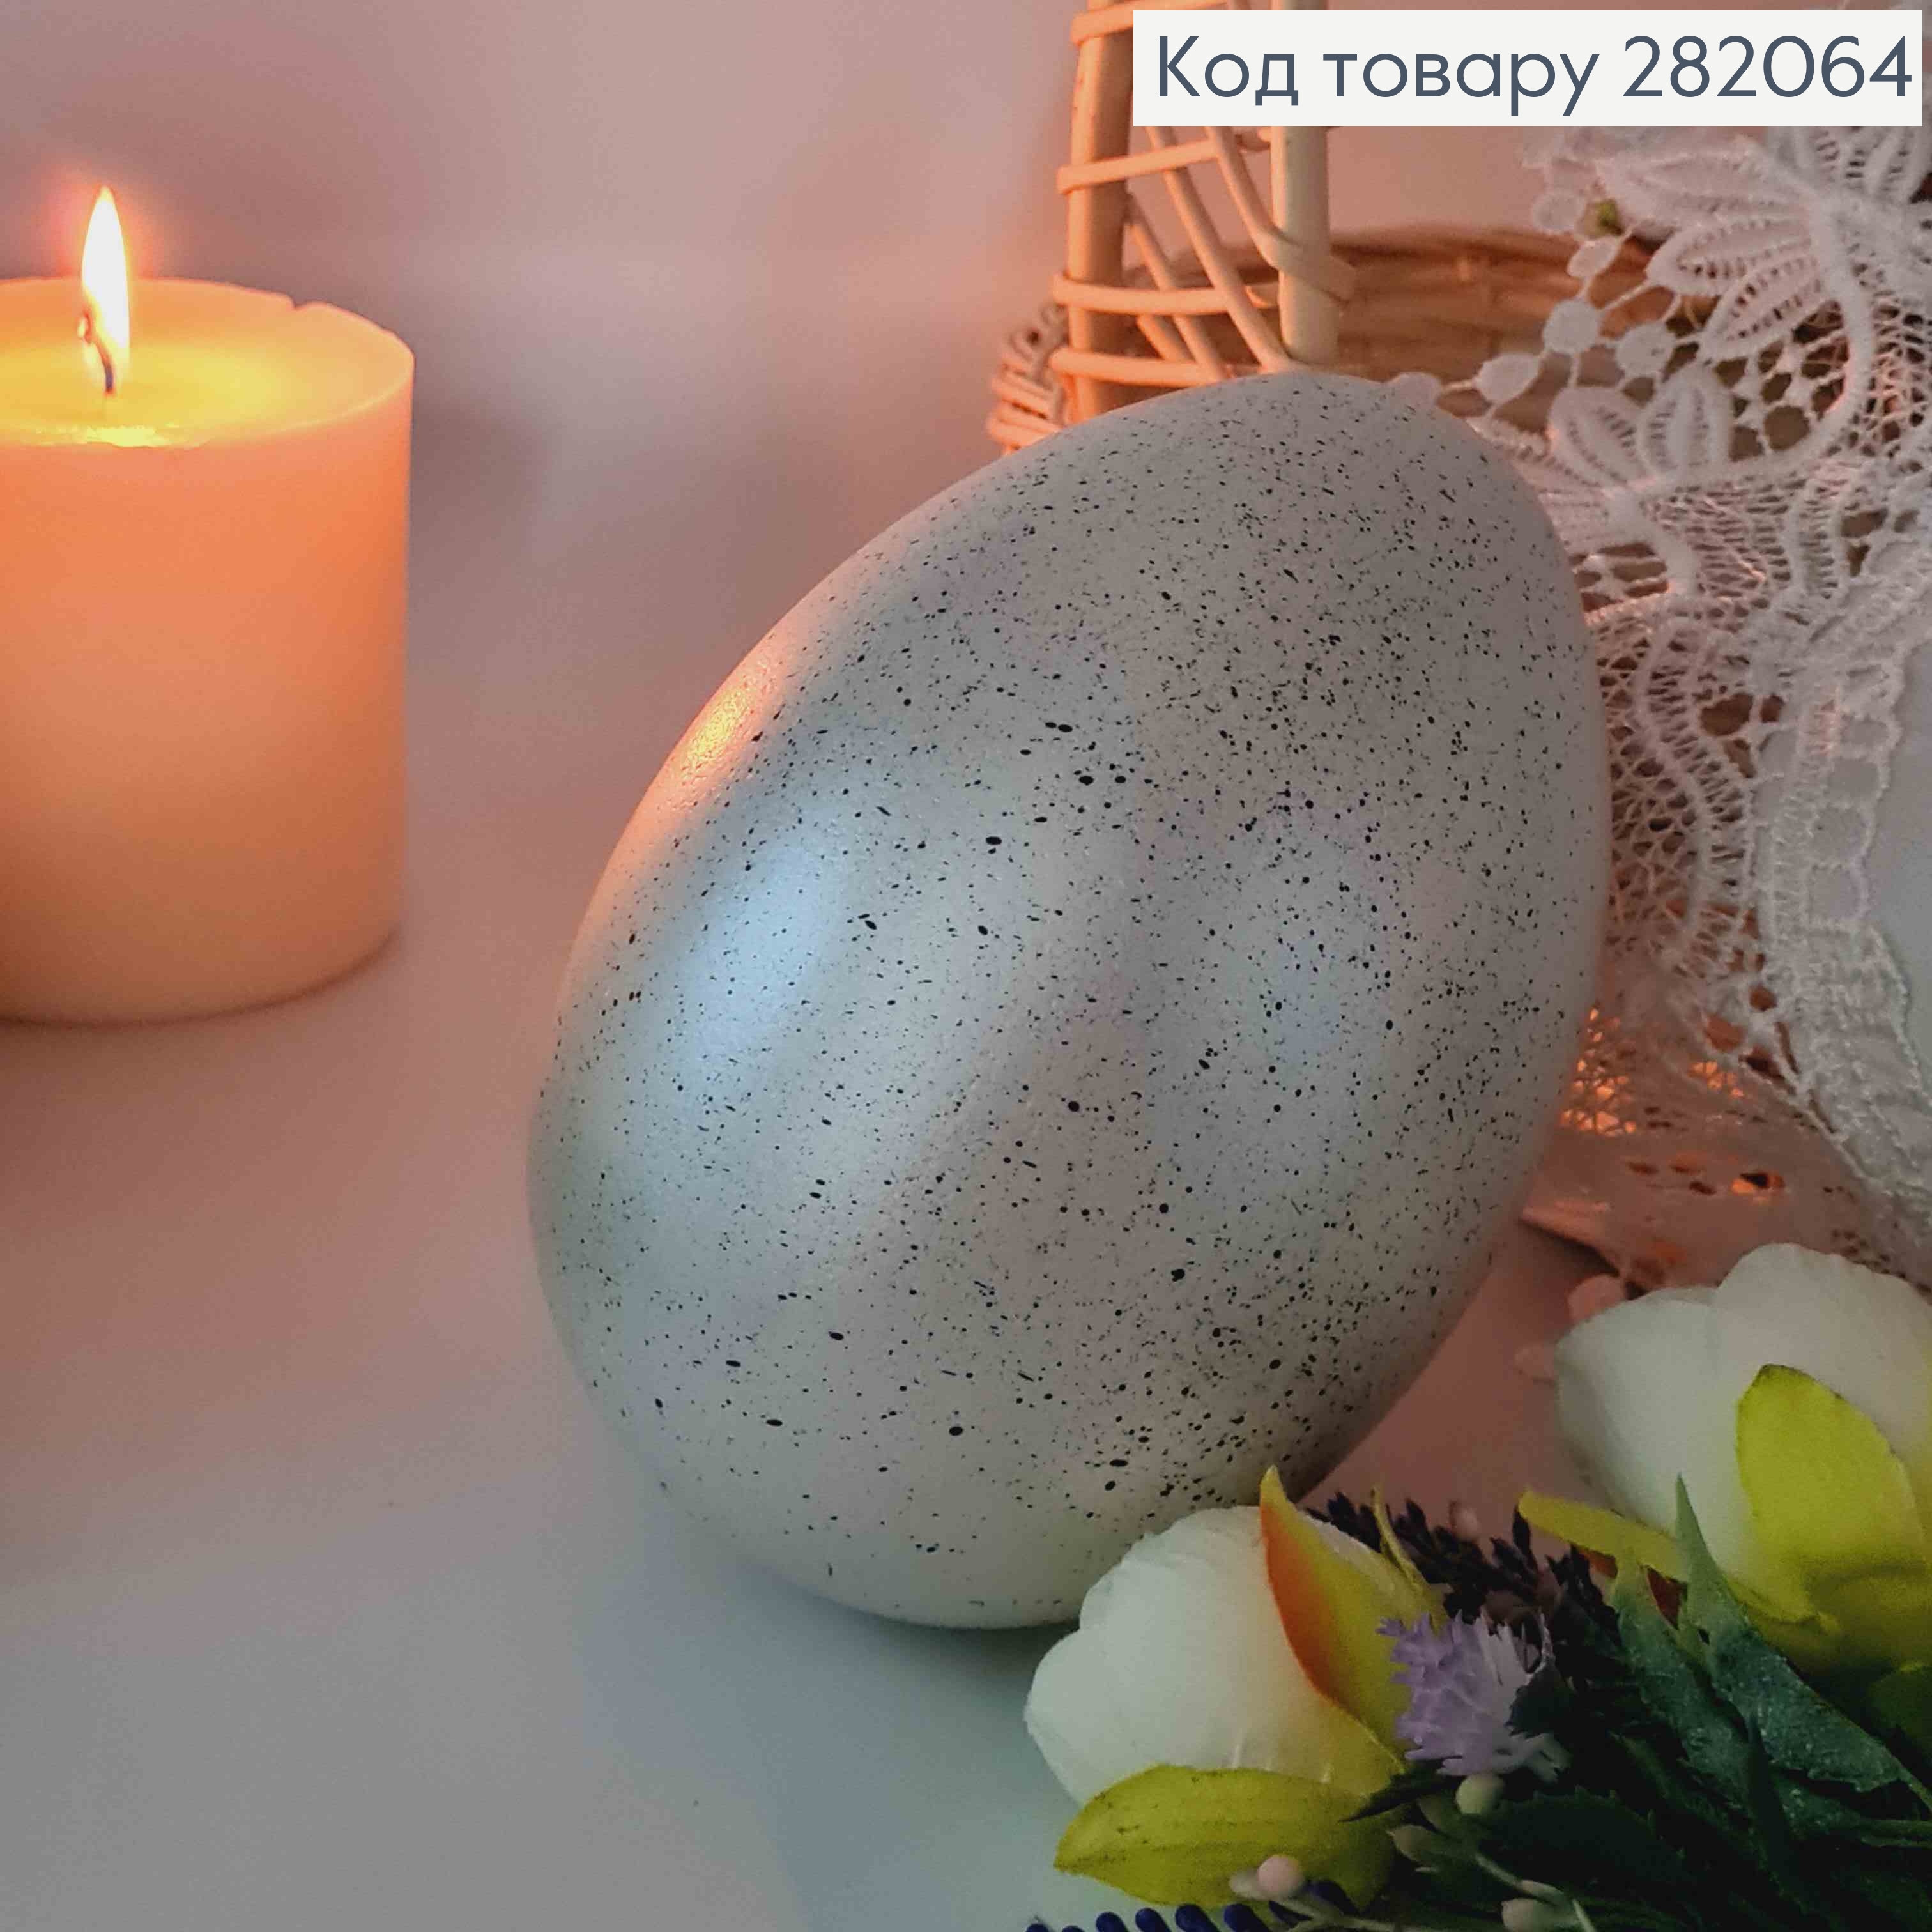 Яйце страусине, з чорним вкрапленням СРІБНОГО кольору, 15*10см 282064 фото 2